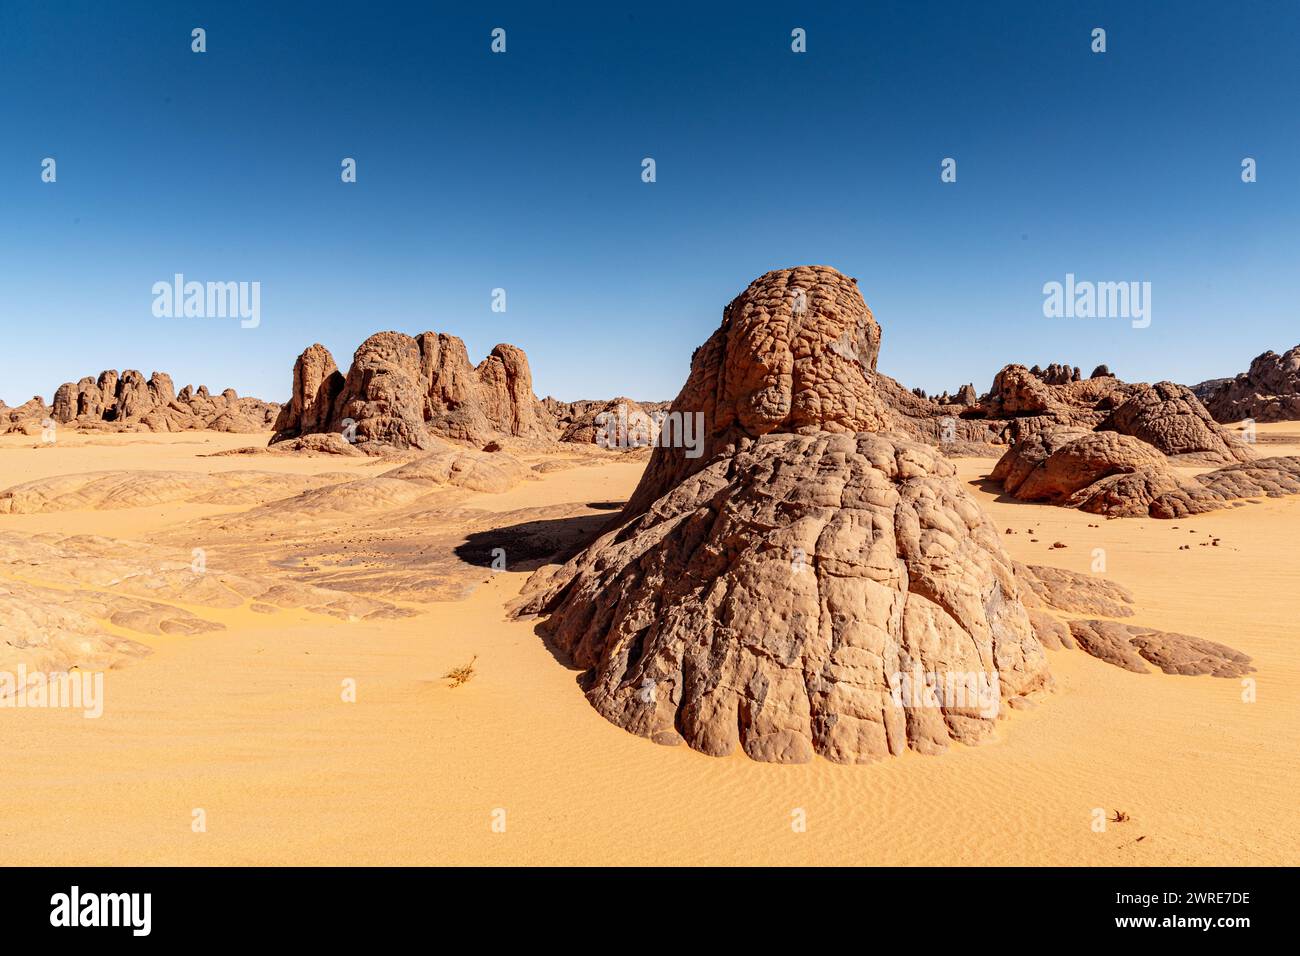 Paysage Tadrart dans le désert du Sahara, Algérie. Formations rocheuses de grès jetant un coup d'œil sur le sable jaune Banque D'Images